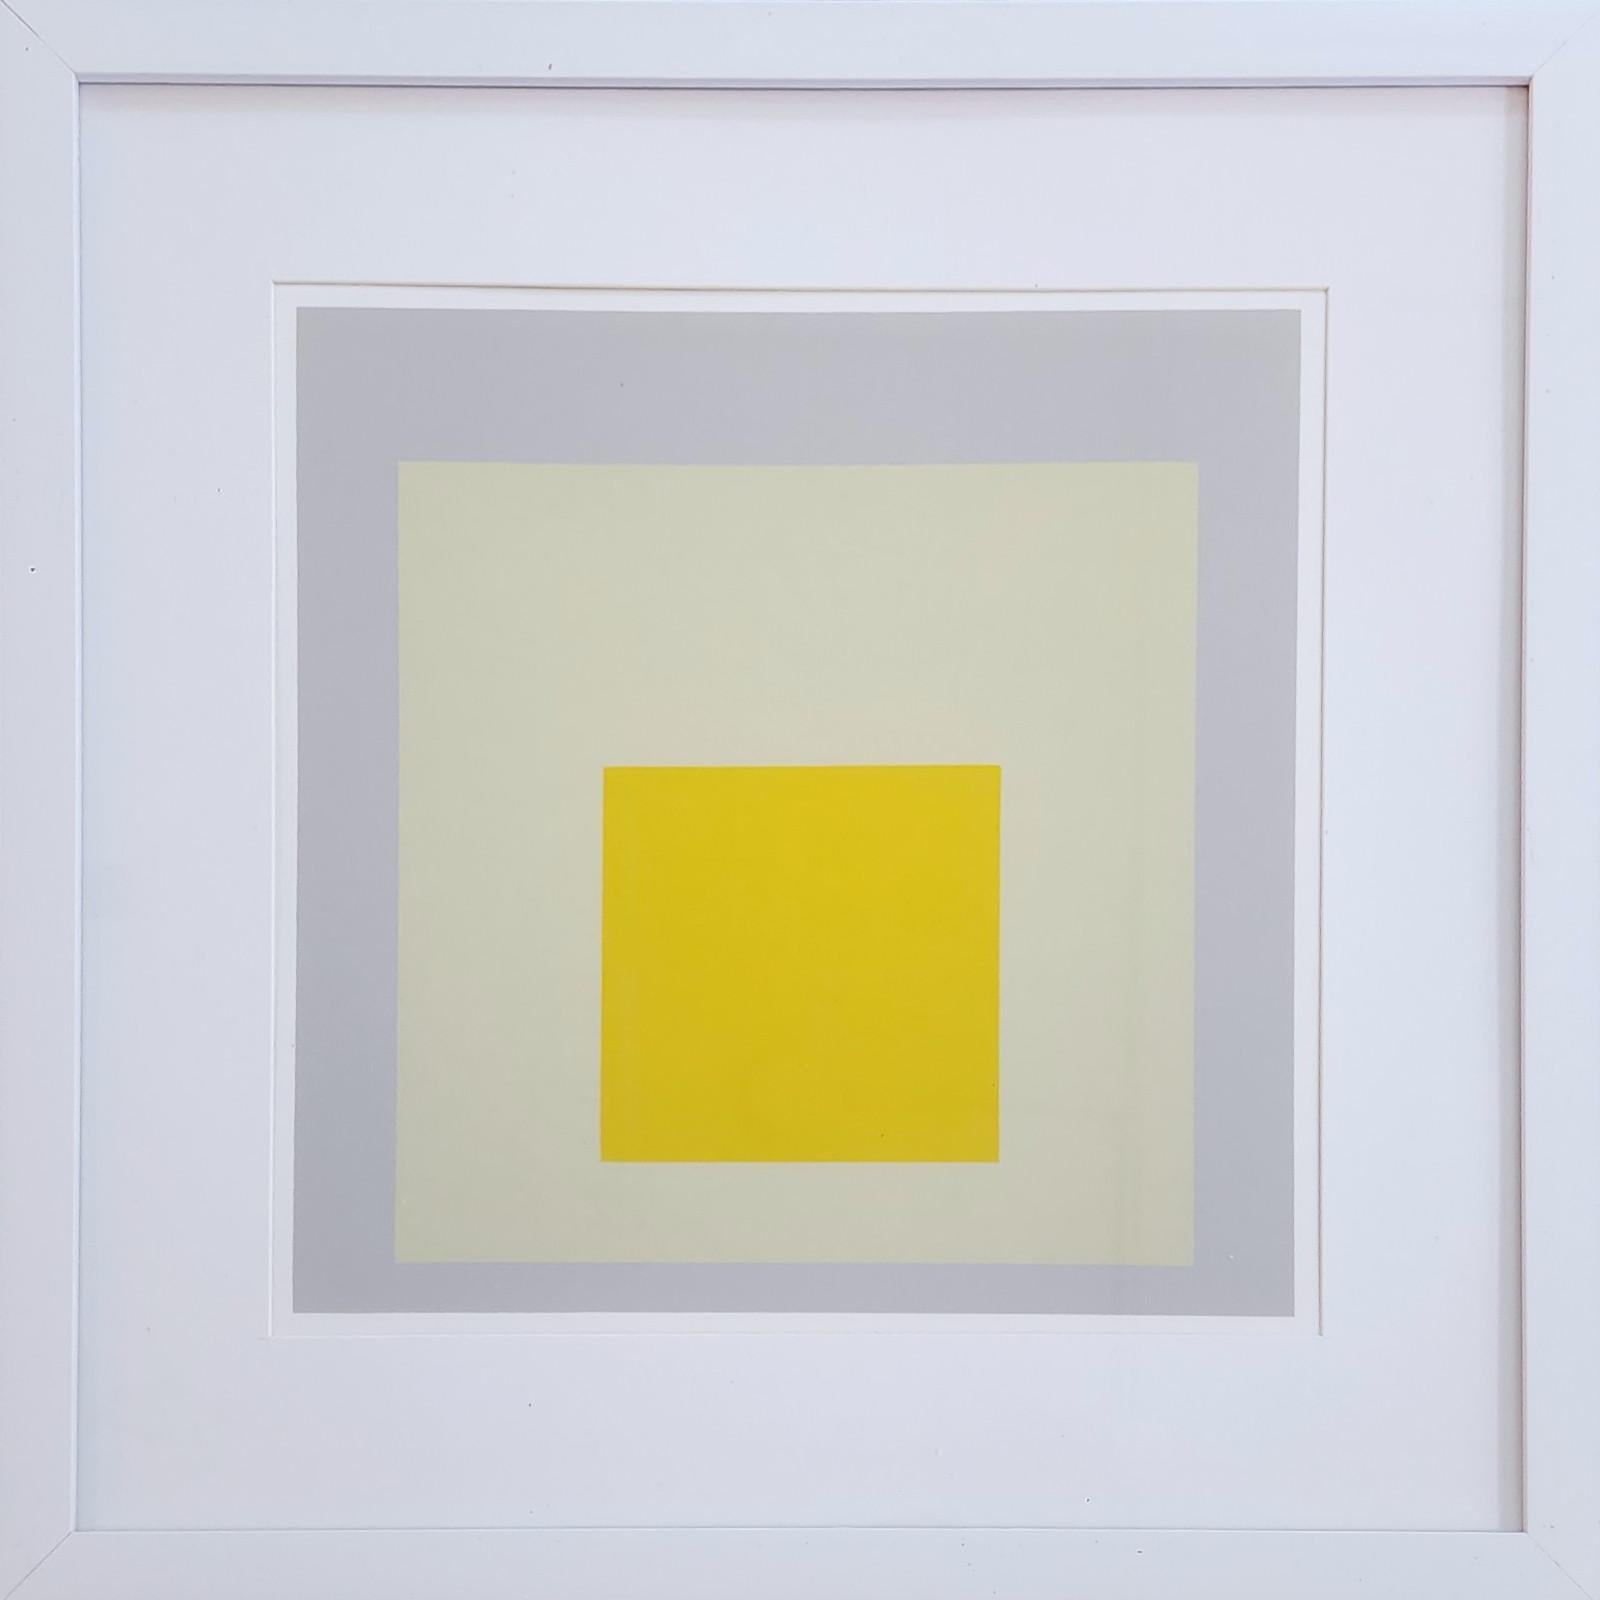 Homage to the Square: Impact (Bauhaus, Minimalismus, 50% OFF LIST PRICE) (Minimalistisch), Print, von (after) Josef Albers